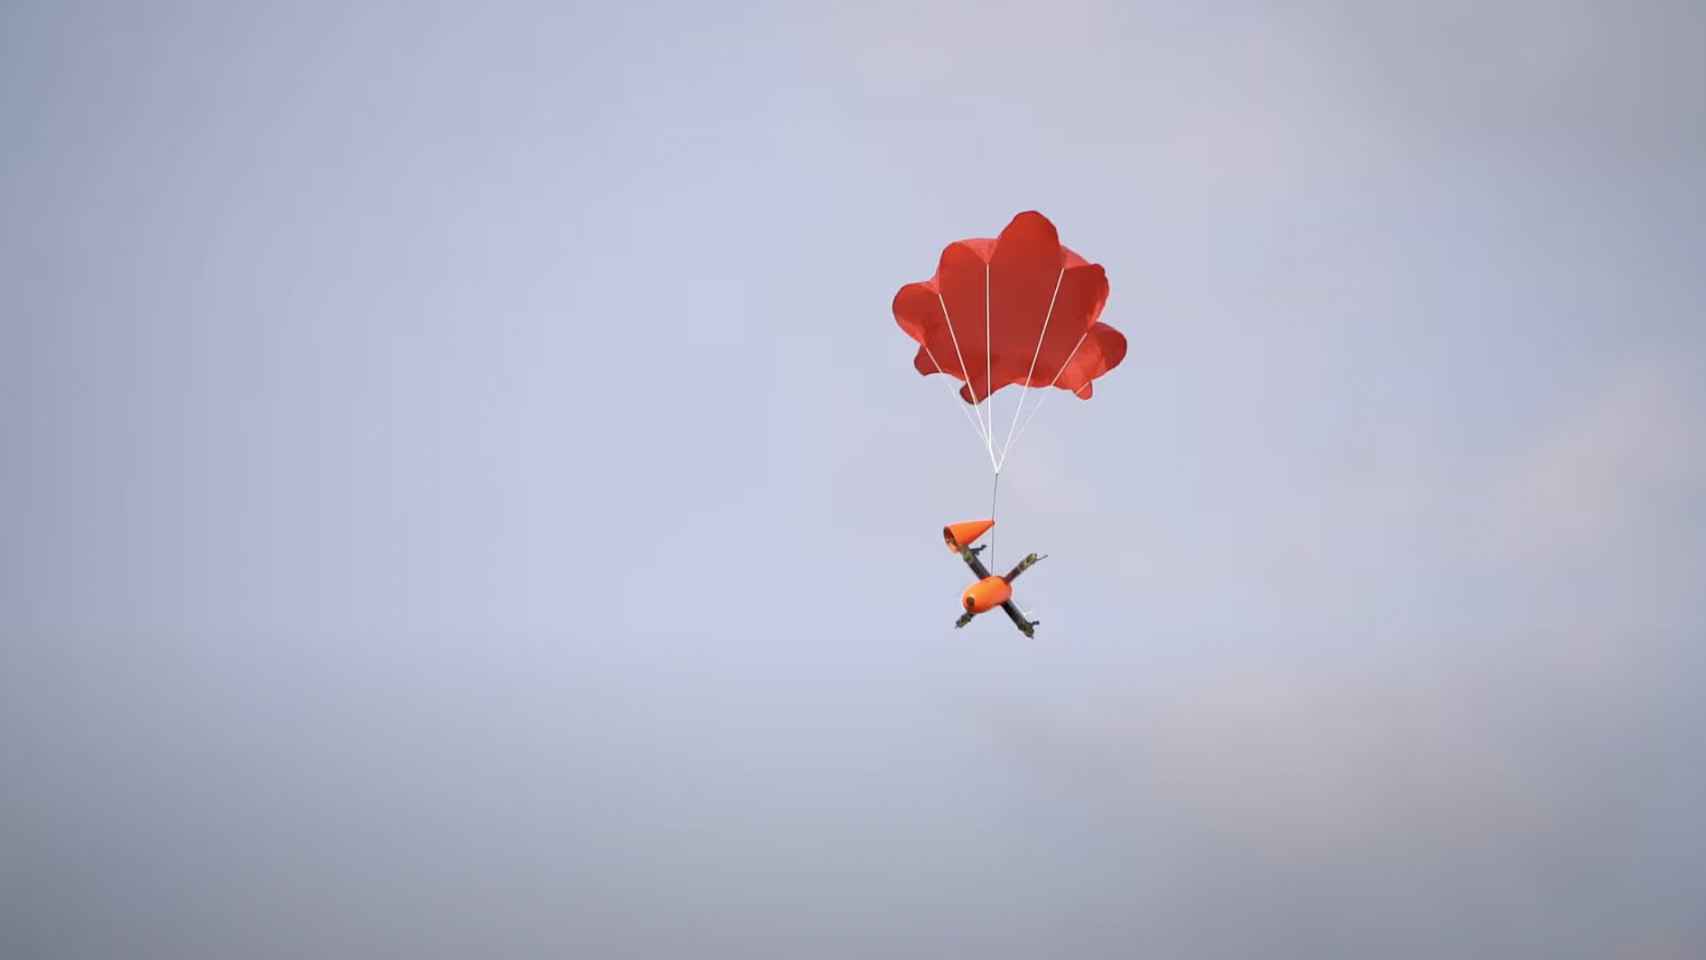 Dron cayendo con un paracaídas.